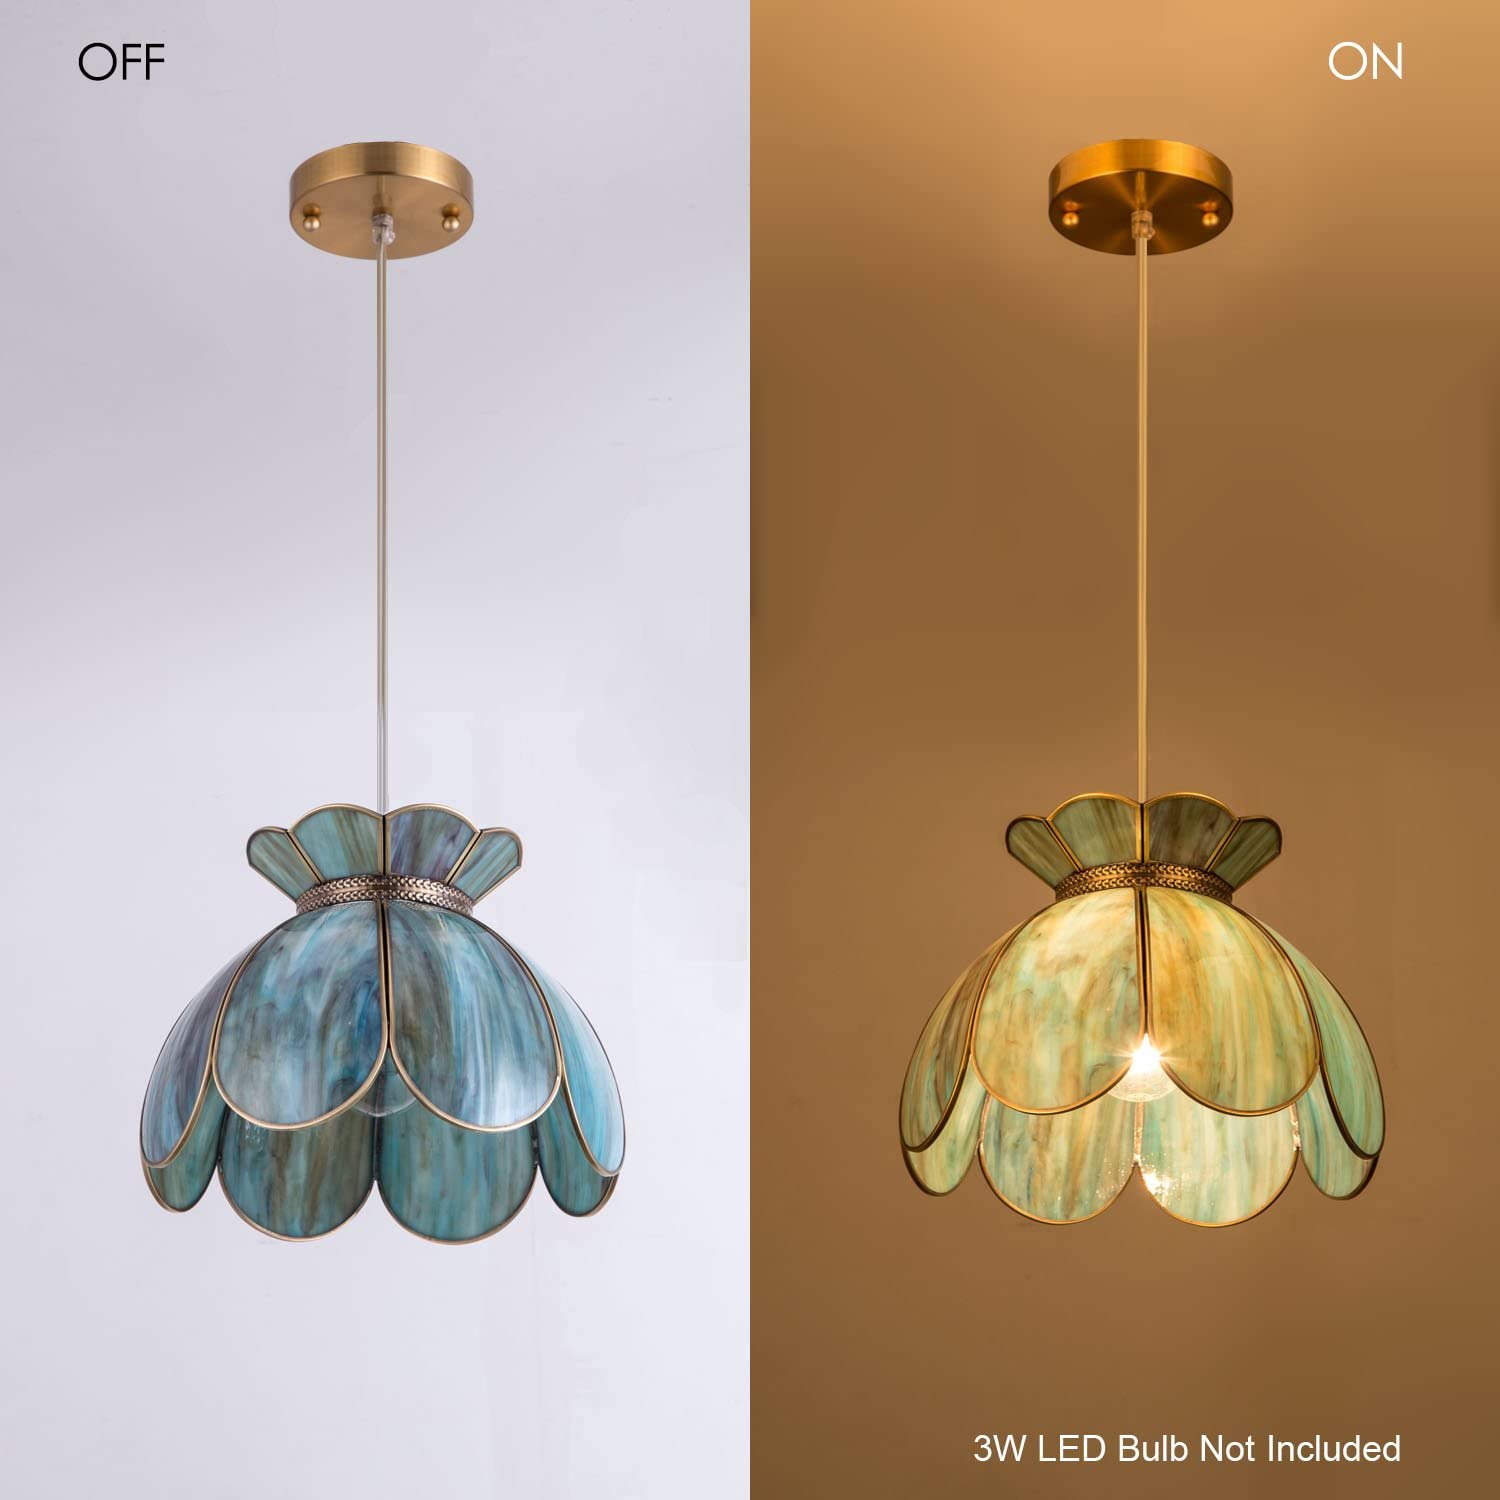 Vintage lotus flower pendant light fixture dining room pendant lamp